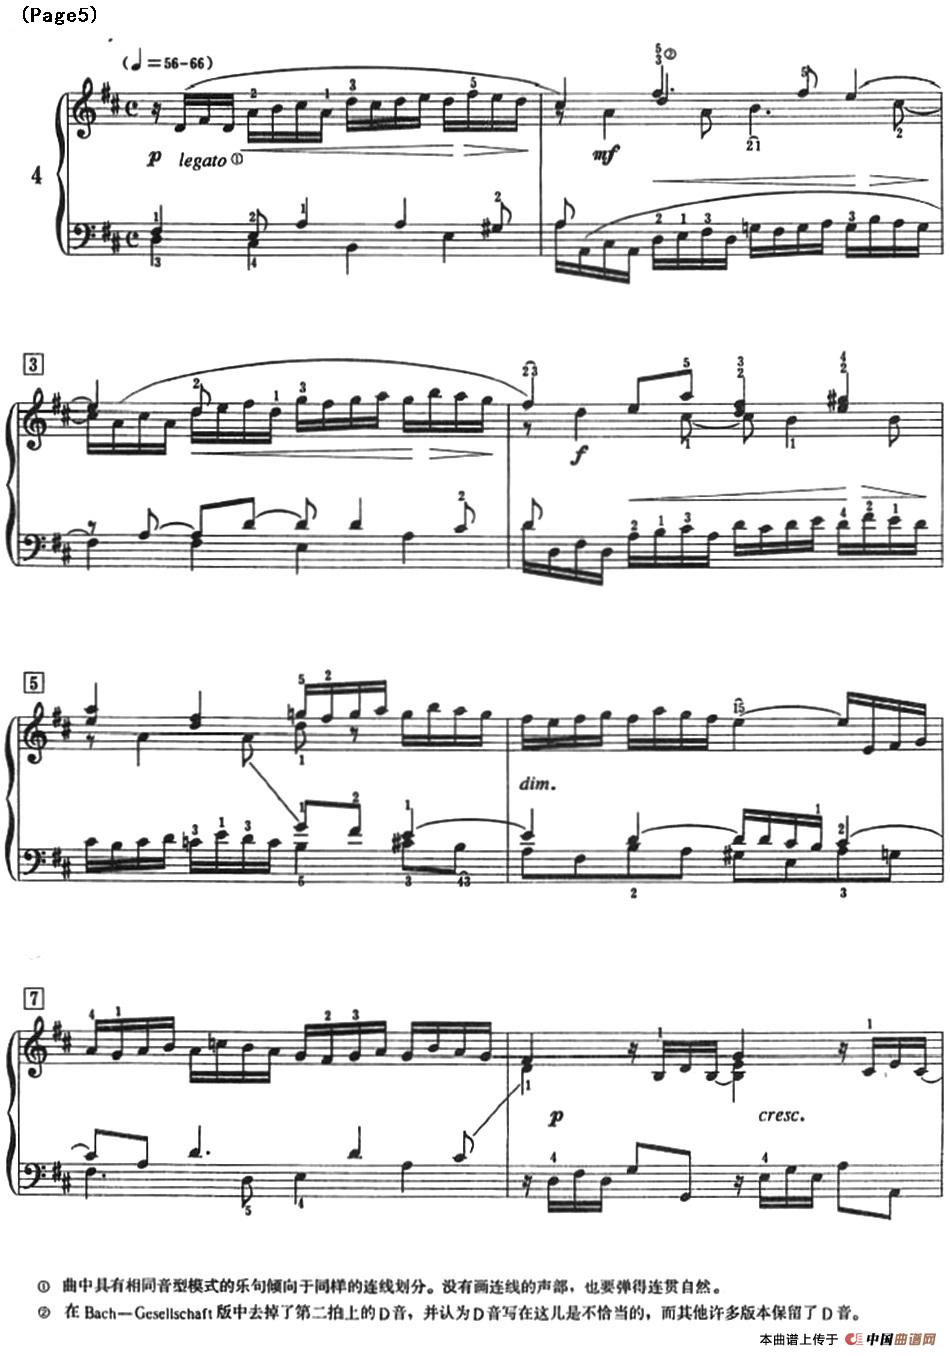 巴赫小前奏曲（NO.1-NO.4）(1)_Bach Little Prelude and Fugue_页面_10.jpg